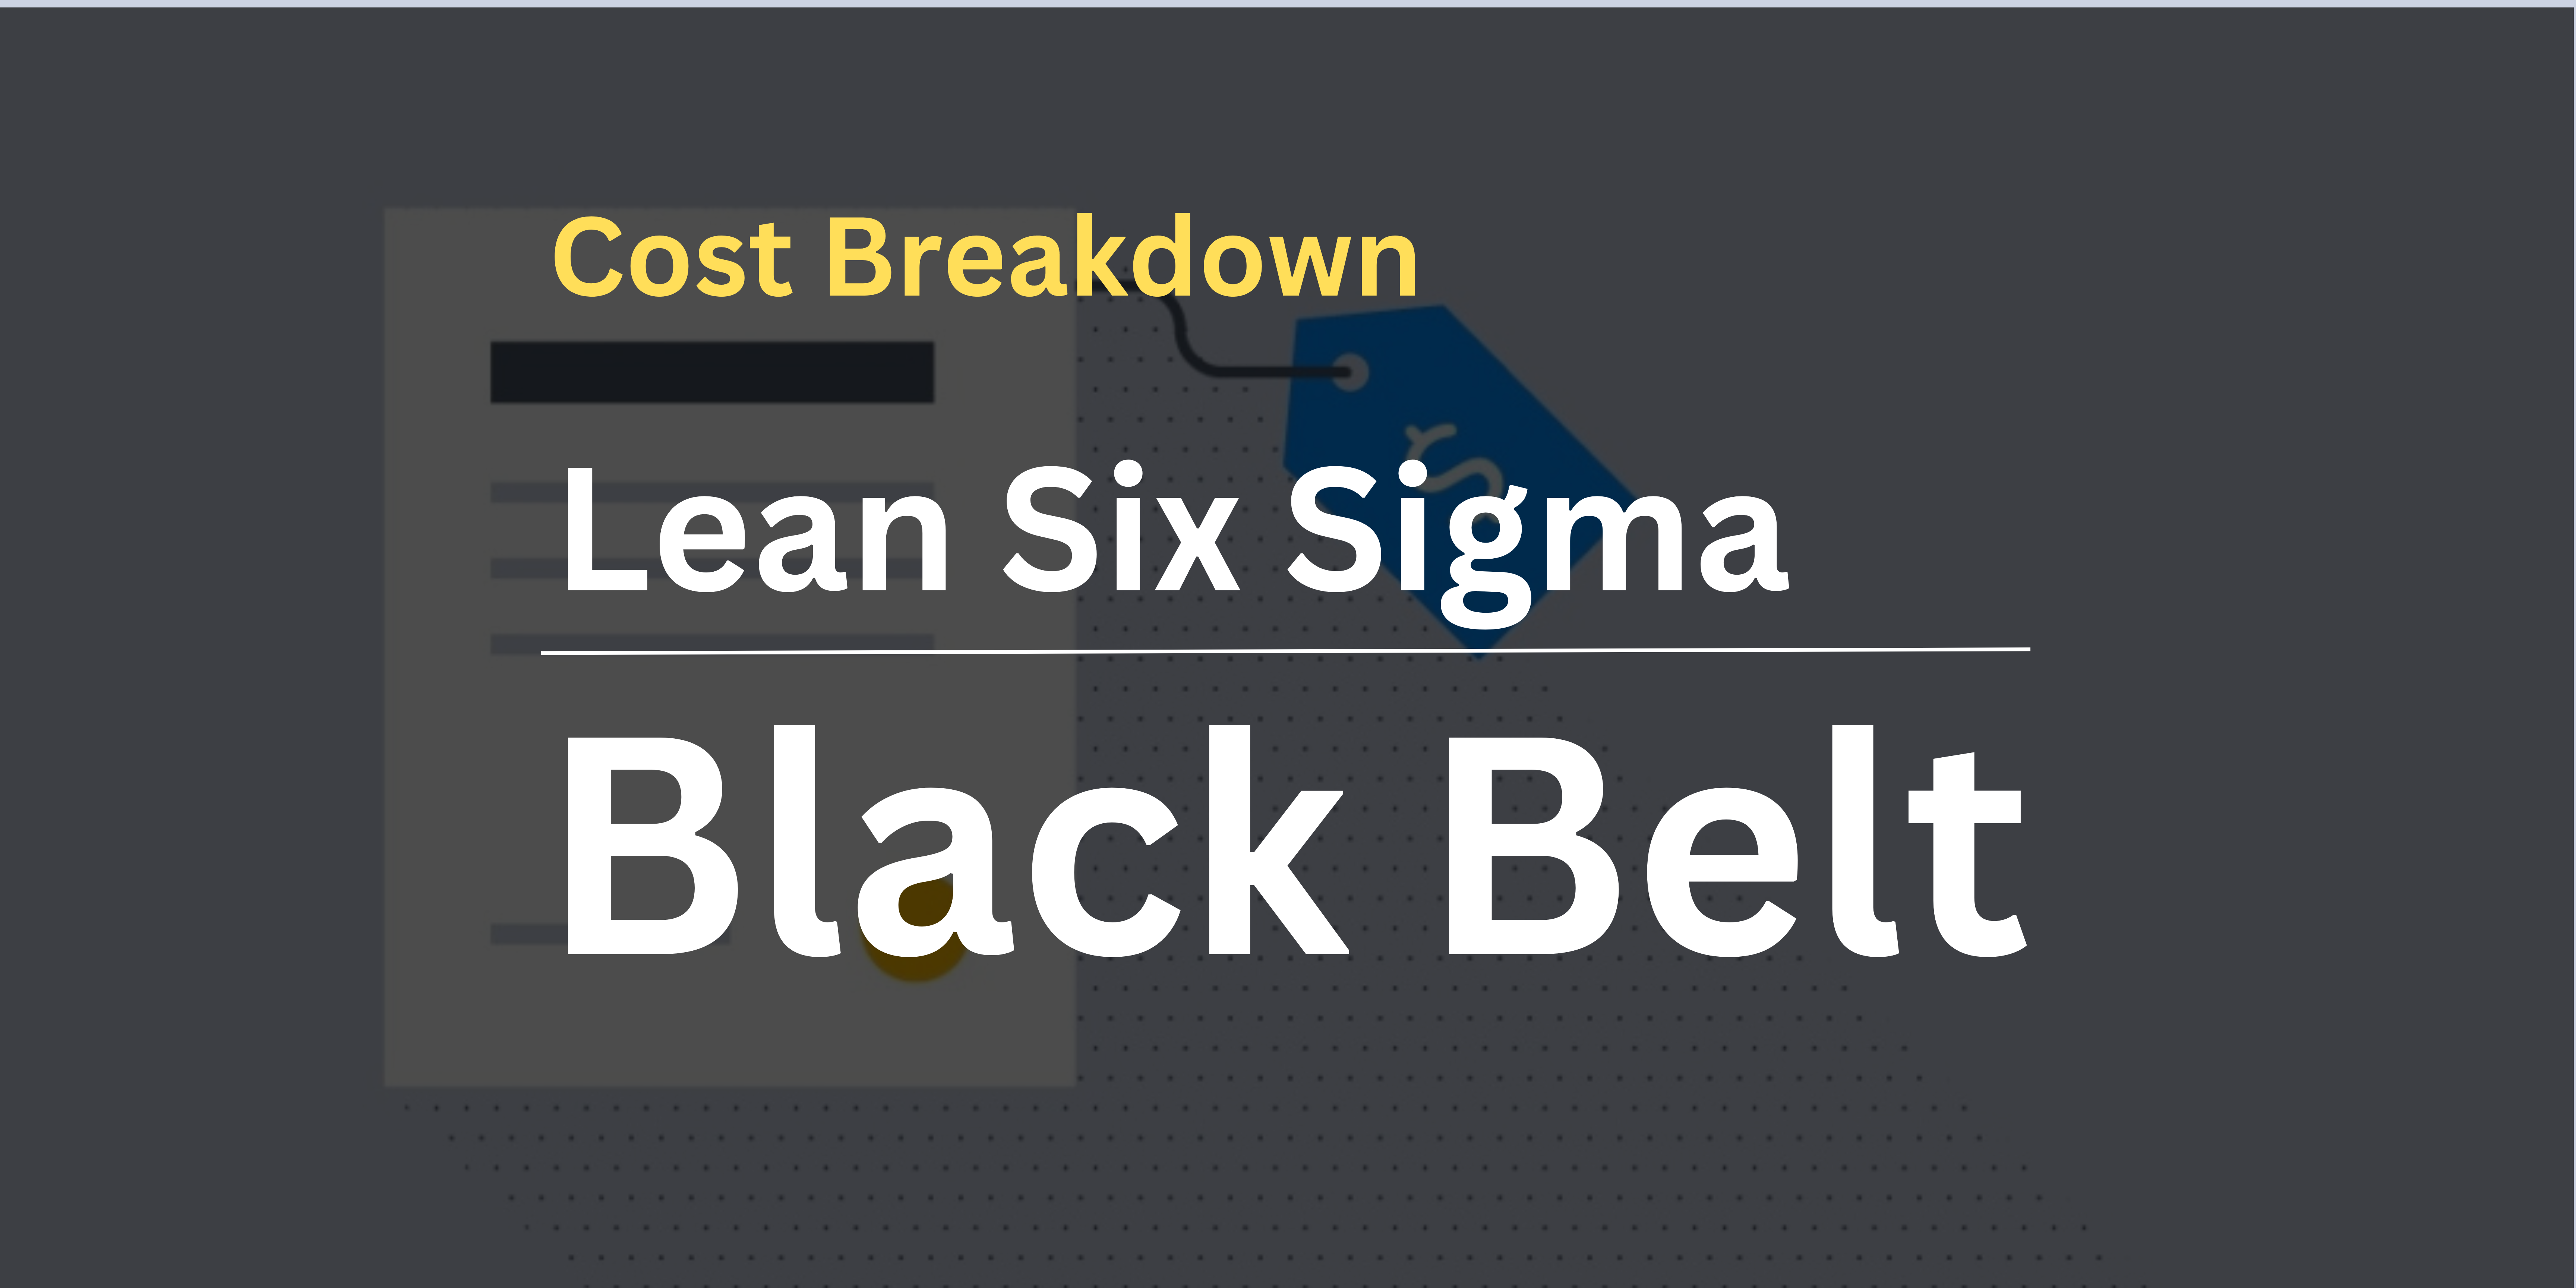 Lean Six Sigma Black Belt Certification Cost Breakdown